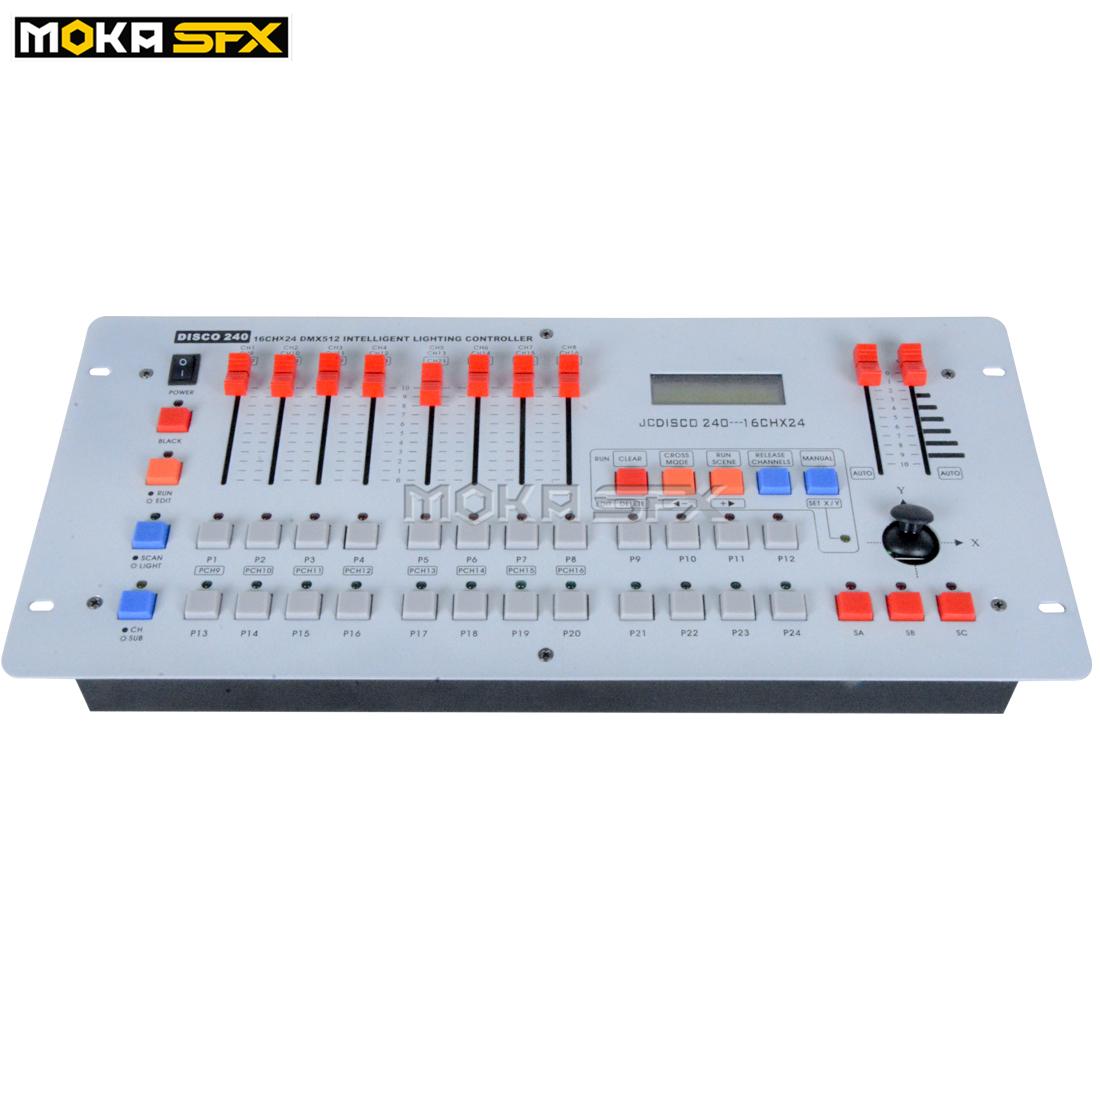 Изображение товара: Контроллер DJ MOKA, сценическое движущееся освещение на 240 каналов, консоль DMX, чувствительное сценическое освещение, контроллеры DMX для дискотеки и диджея